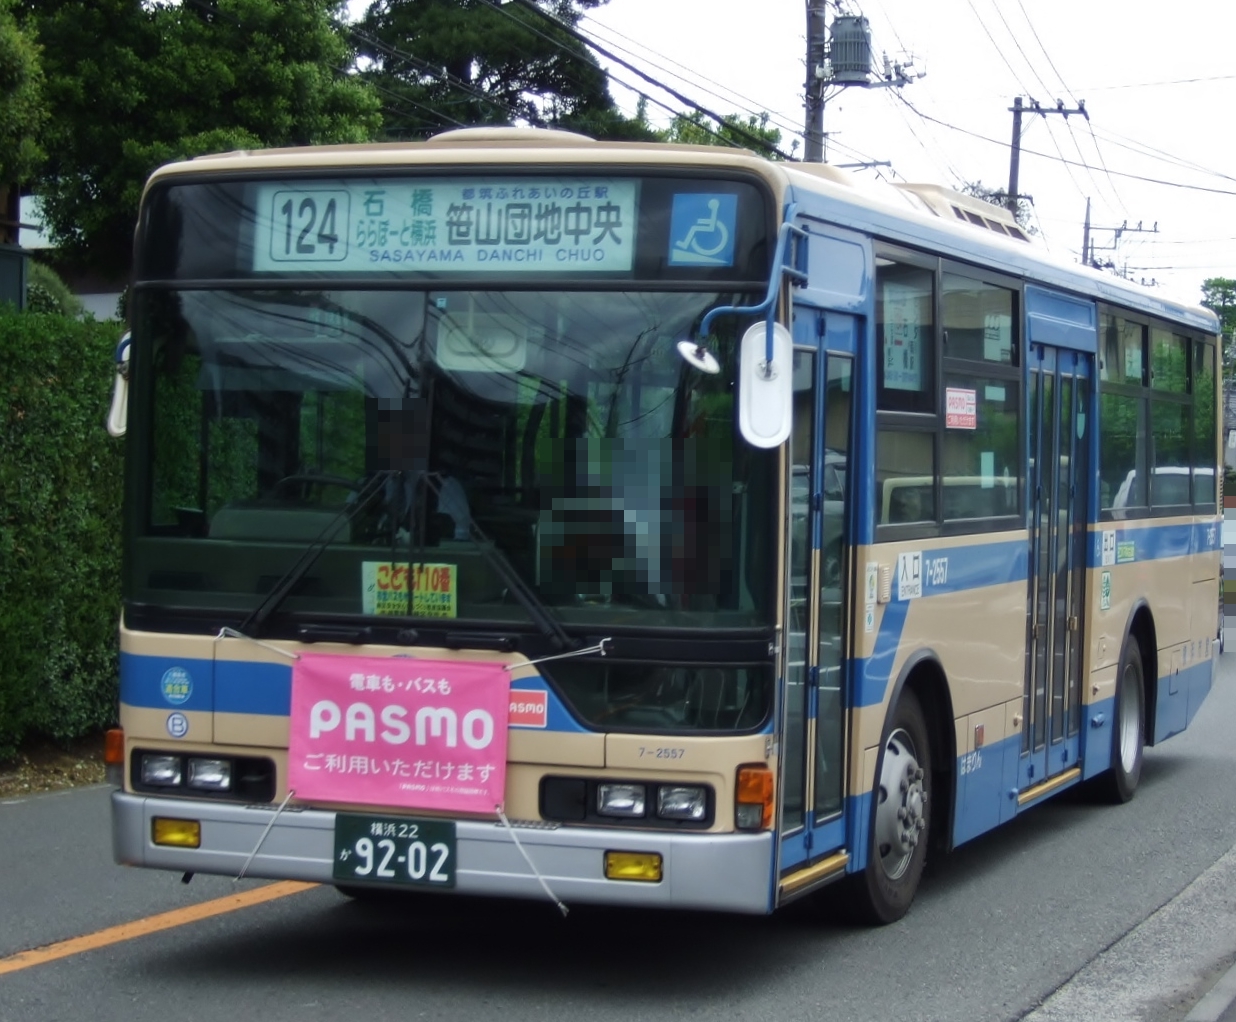 経由地が上に表記されていた方向幕 ももたろうくんと横浜市営バスのブログ